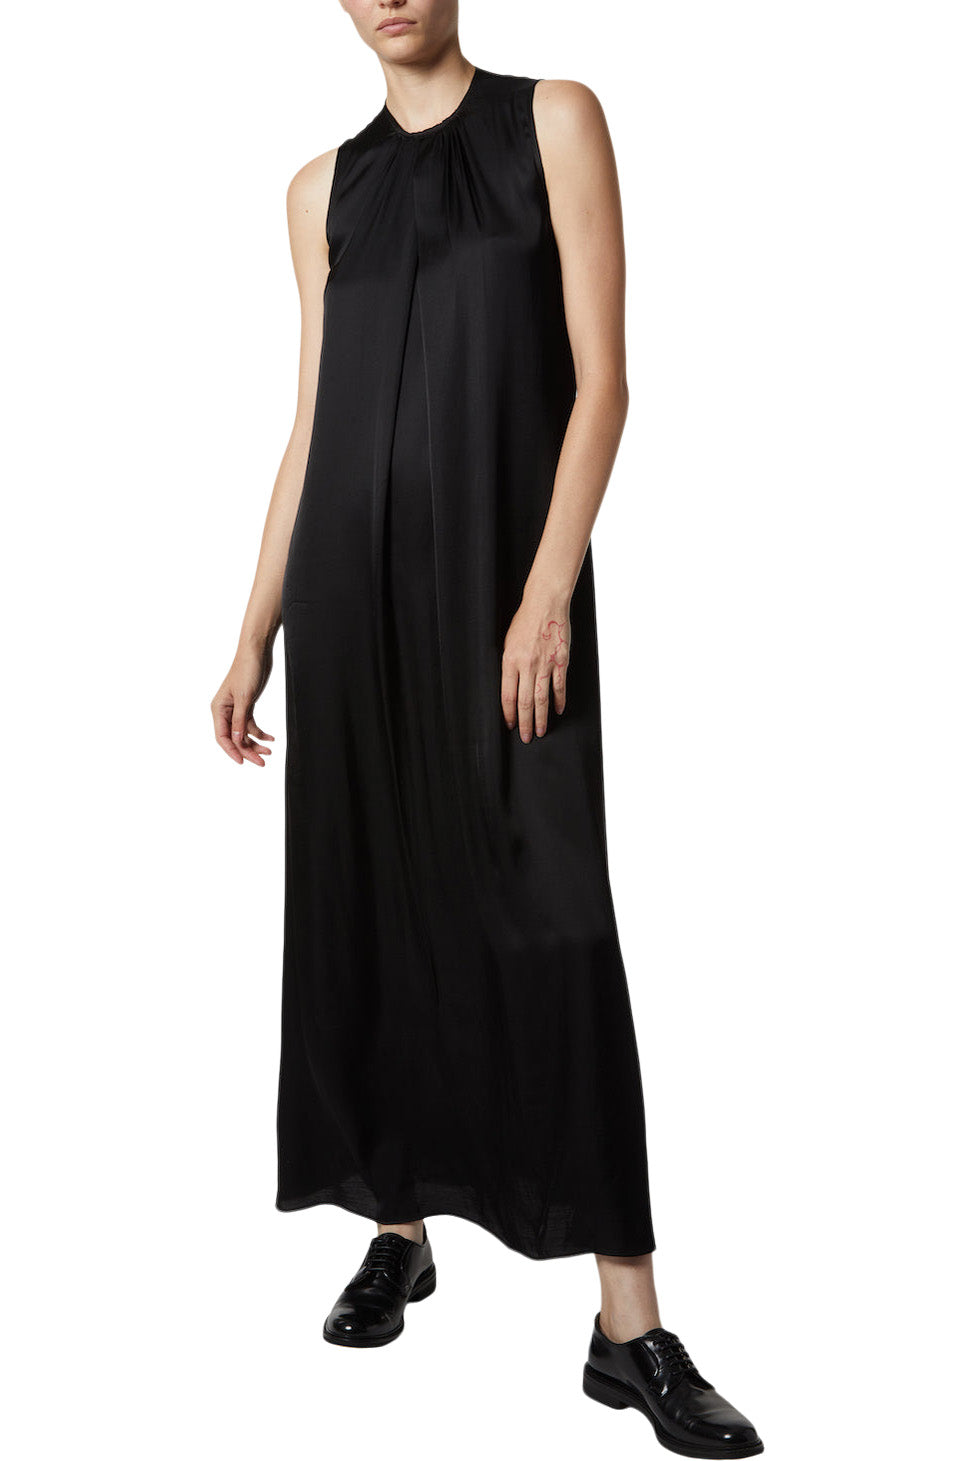 Saint Art Tessa Dress in Black